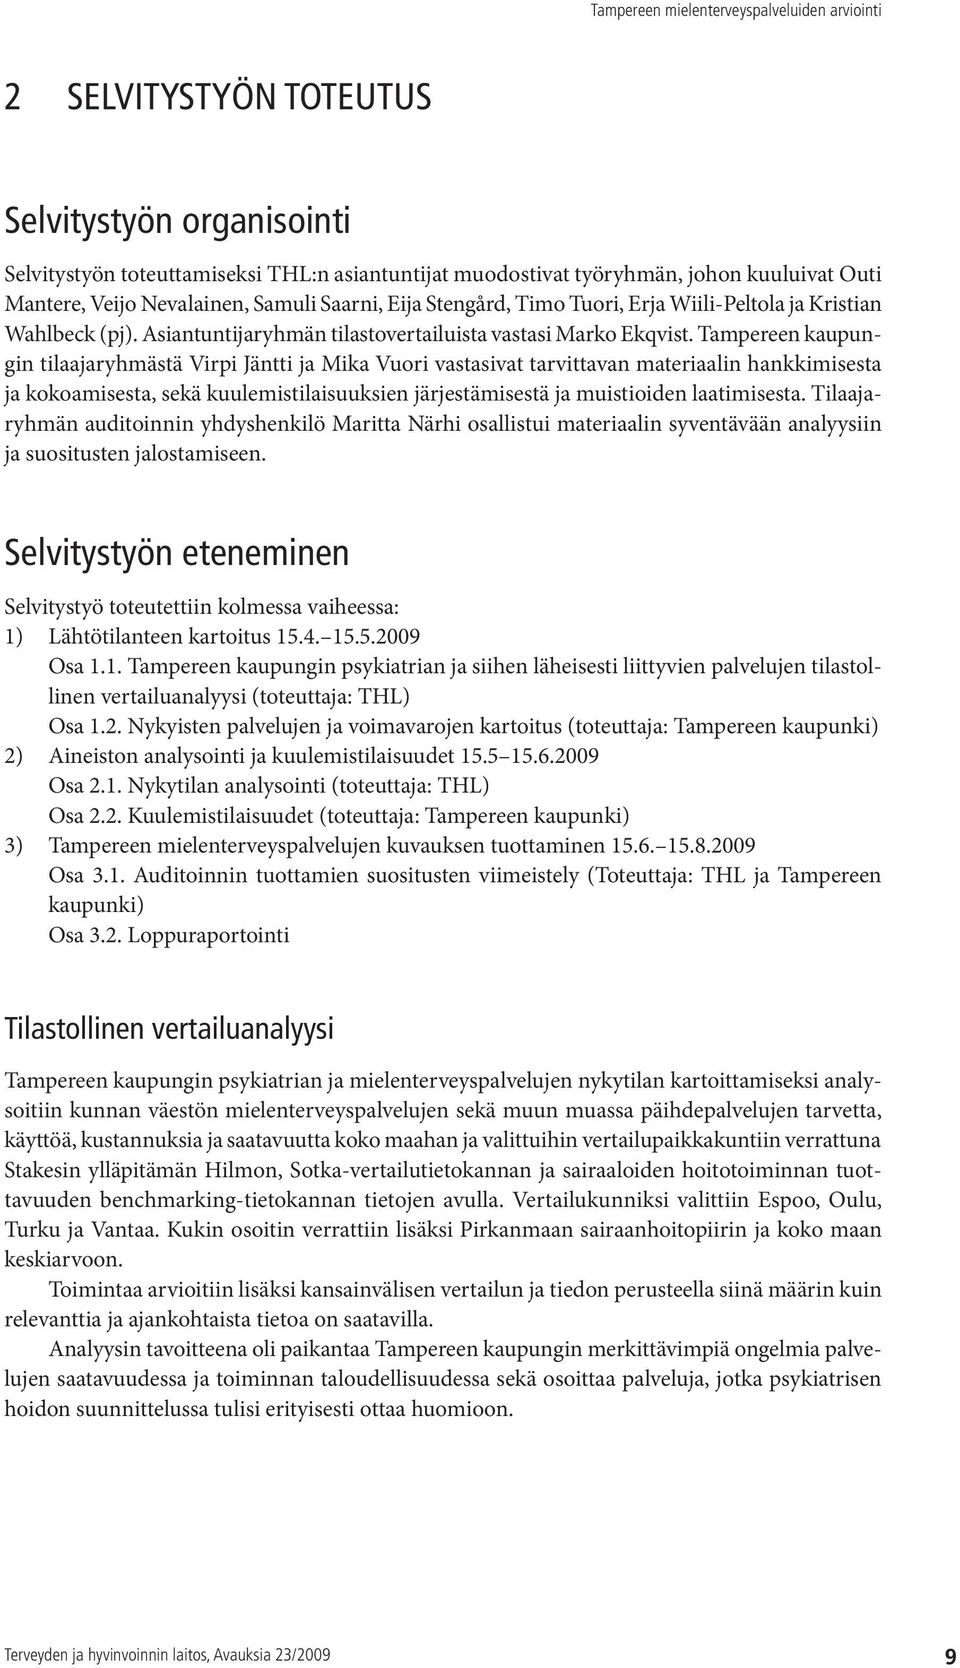 Tampereen kaupungin tilaajaryhmästä Virpi Jäntti ja Mika Vuori vastasivat tarvittavan materiaalin hankkimisesta ja kokoamisesta, sekä kuulemistilaisuuksien järjestämisestä ja muistioiden laatimisesta.